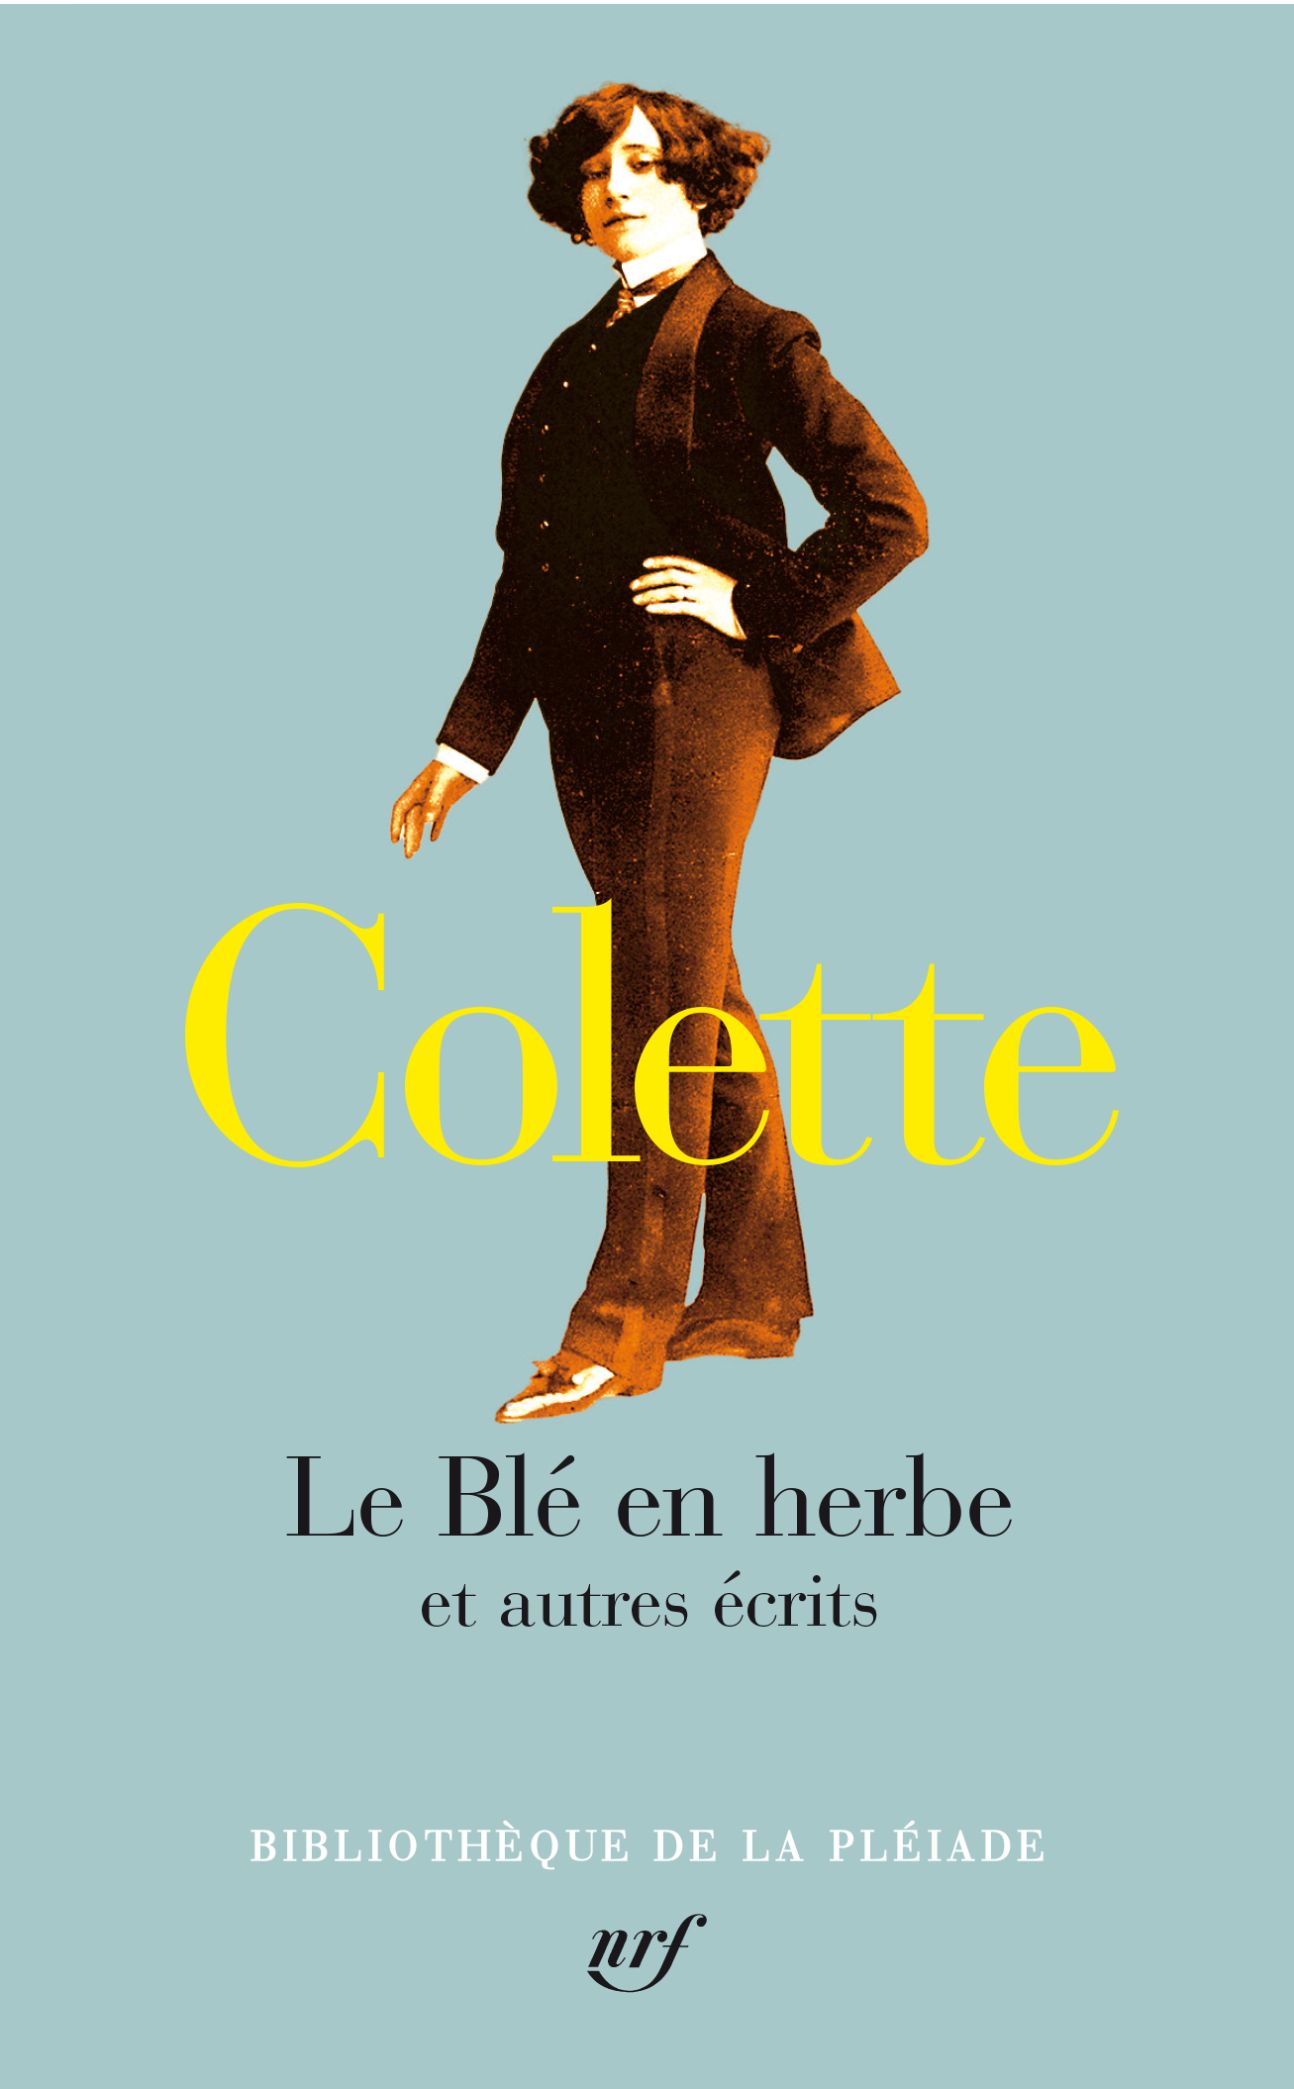 Colette, Le Blé en herbe et autres écrits (Préface d'Antoine Compagnon)